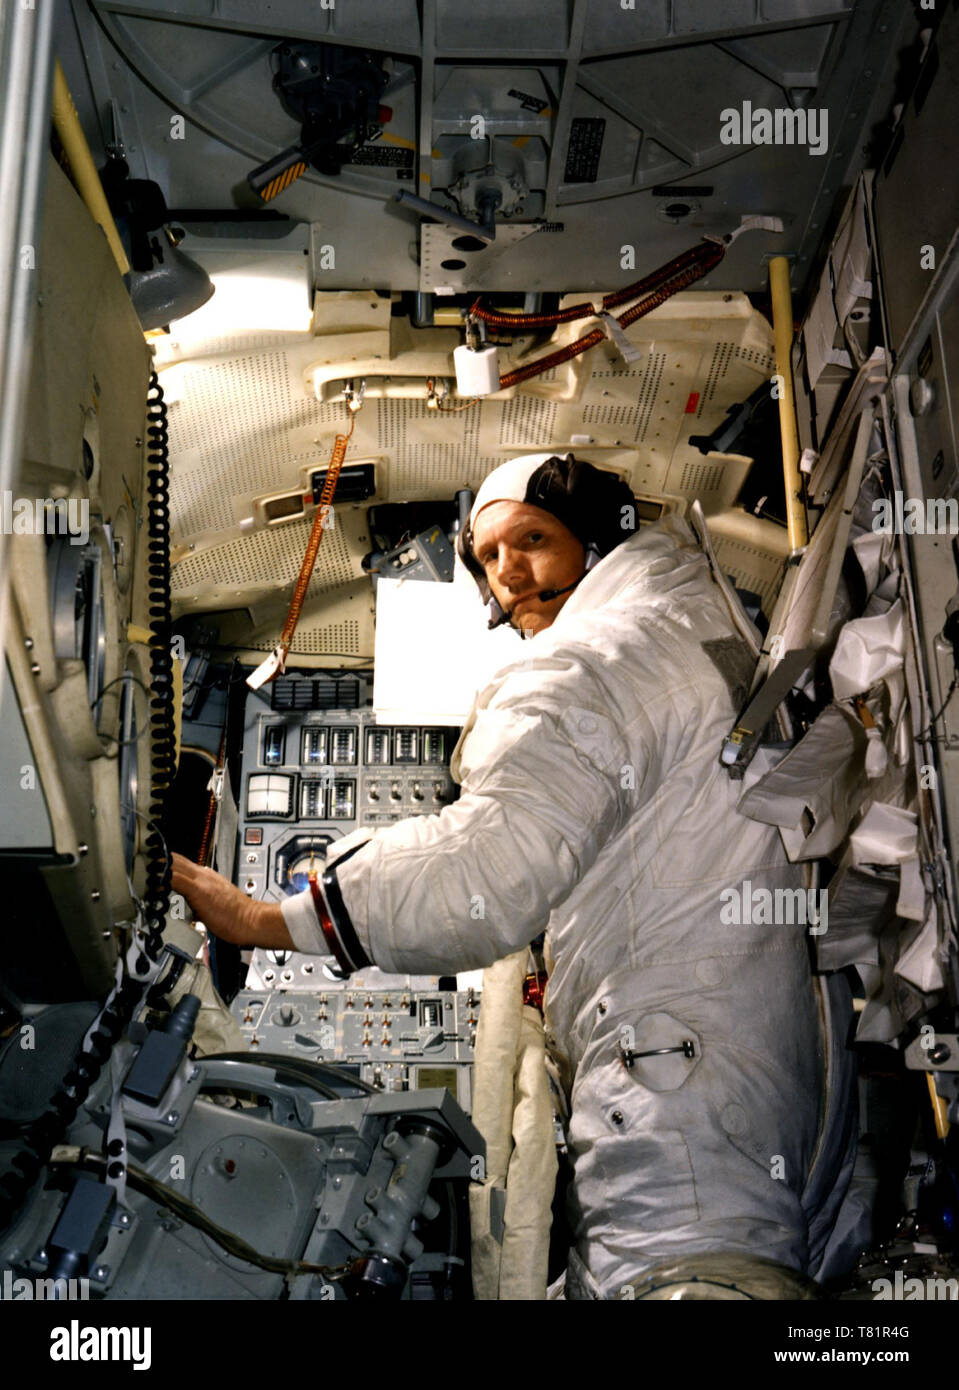 Apollo 11, Lunar Module Mission Simulator, 1969 Stock Photo